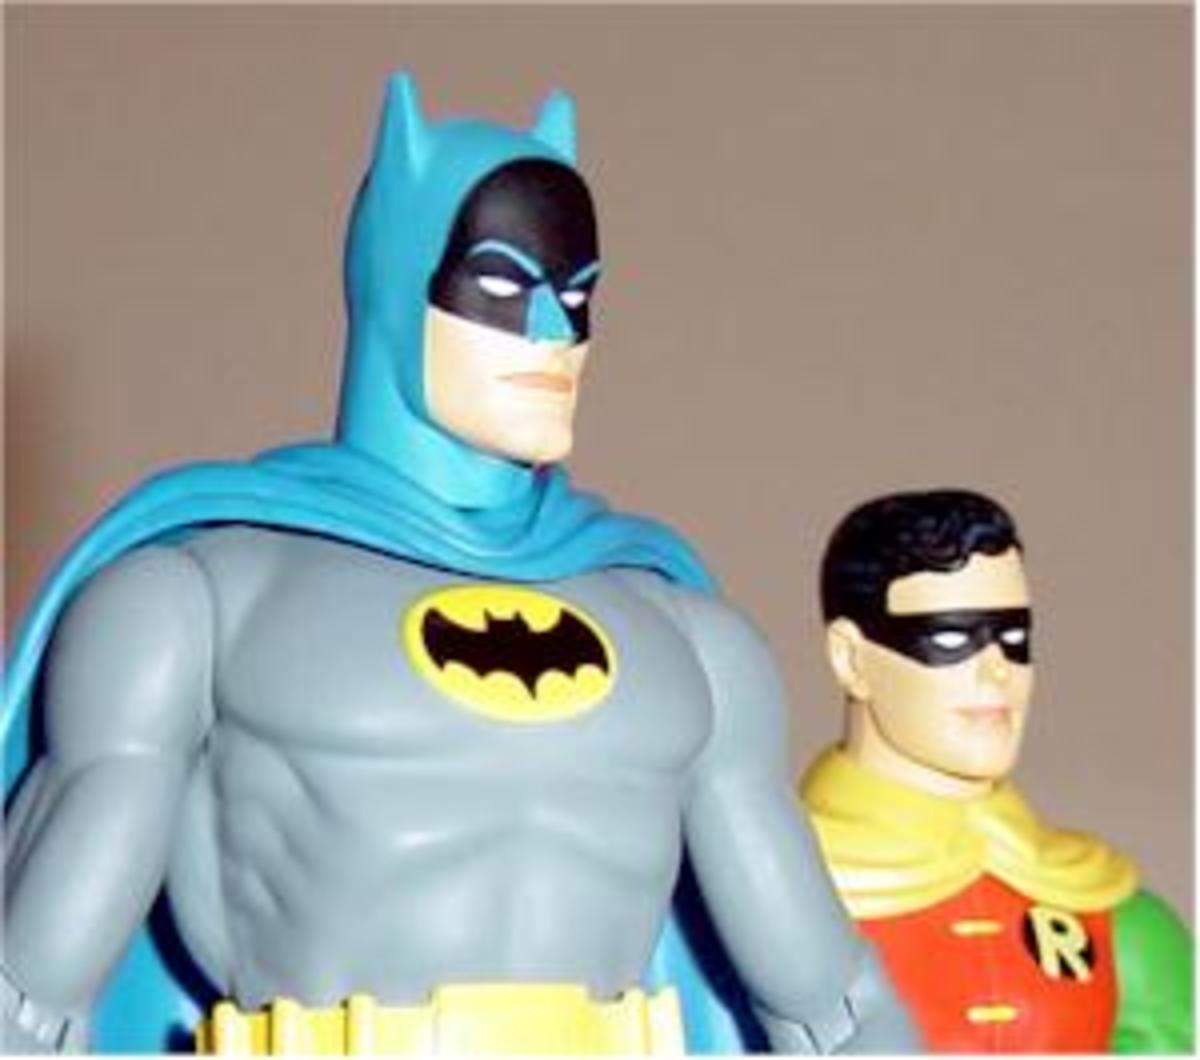 Batman and Robin.